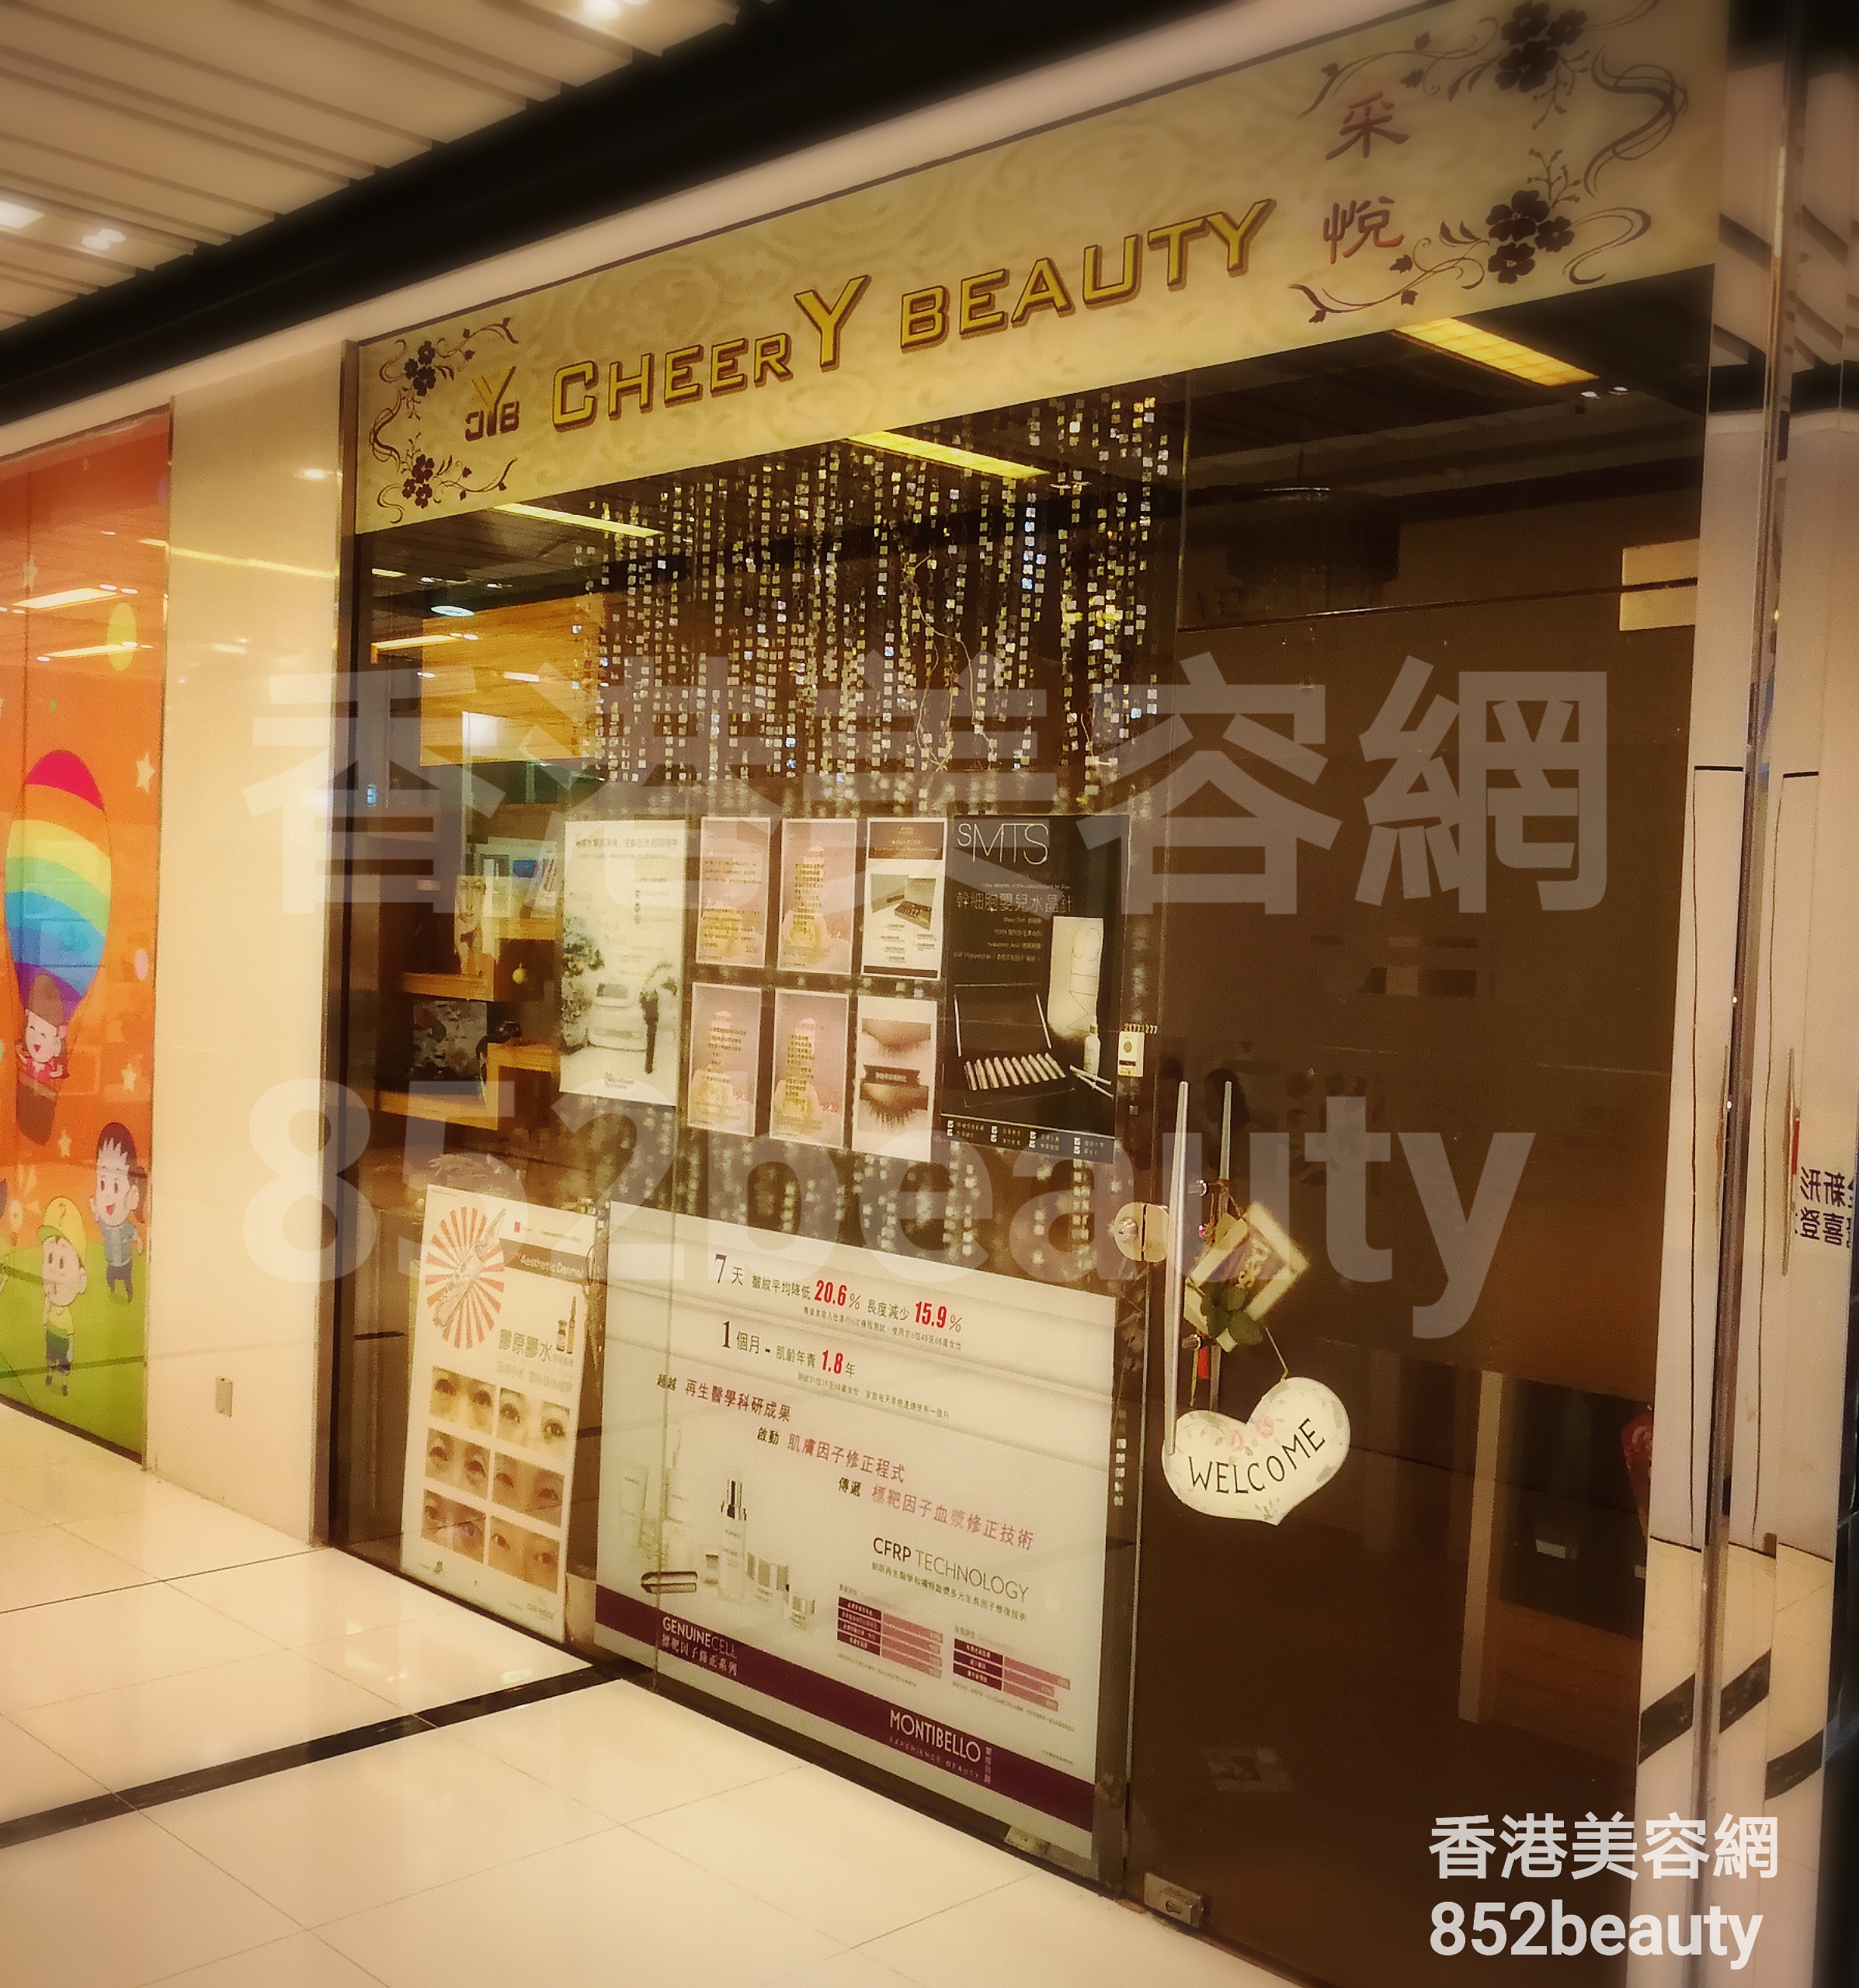 香港美容網 Hong Kong Beauty Salon 美容院 / 美容師: CHEERY BEAUTY 采悅